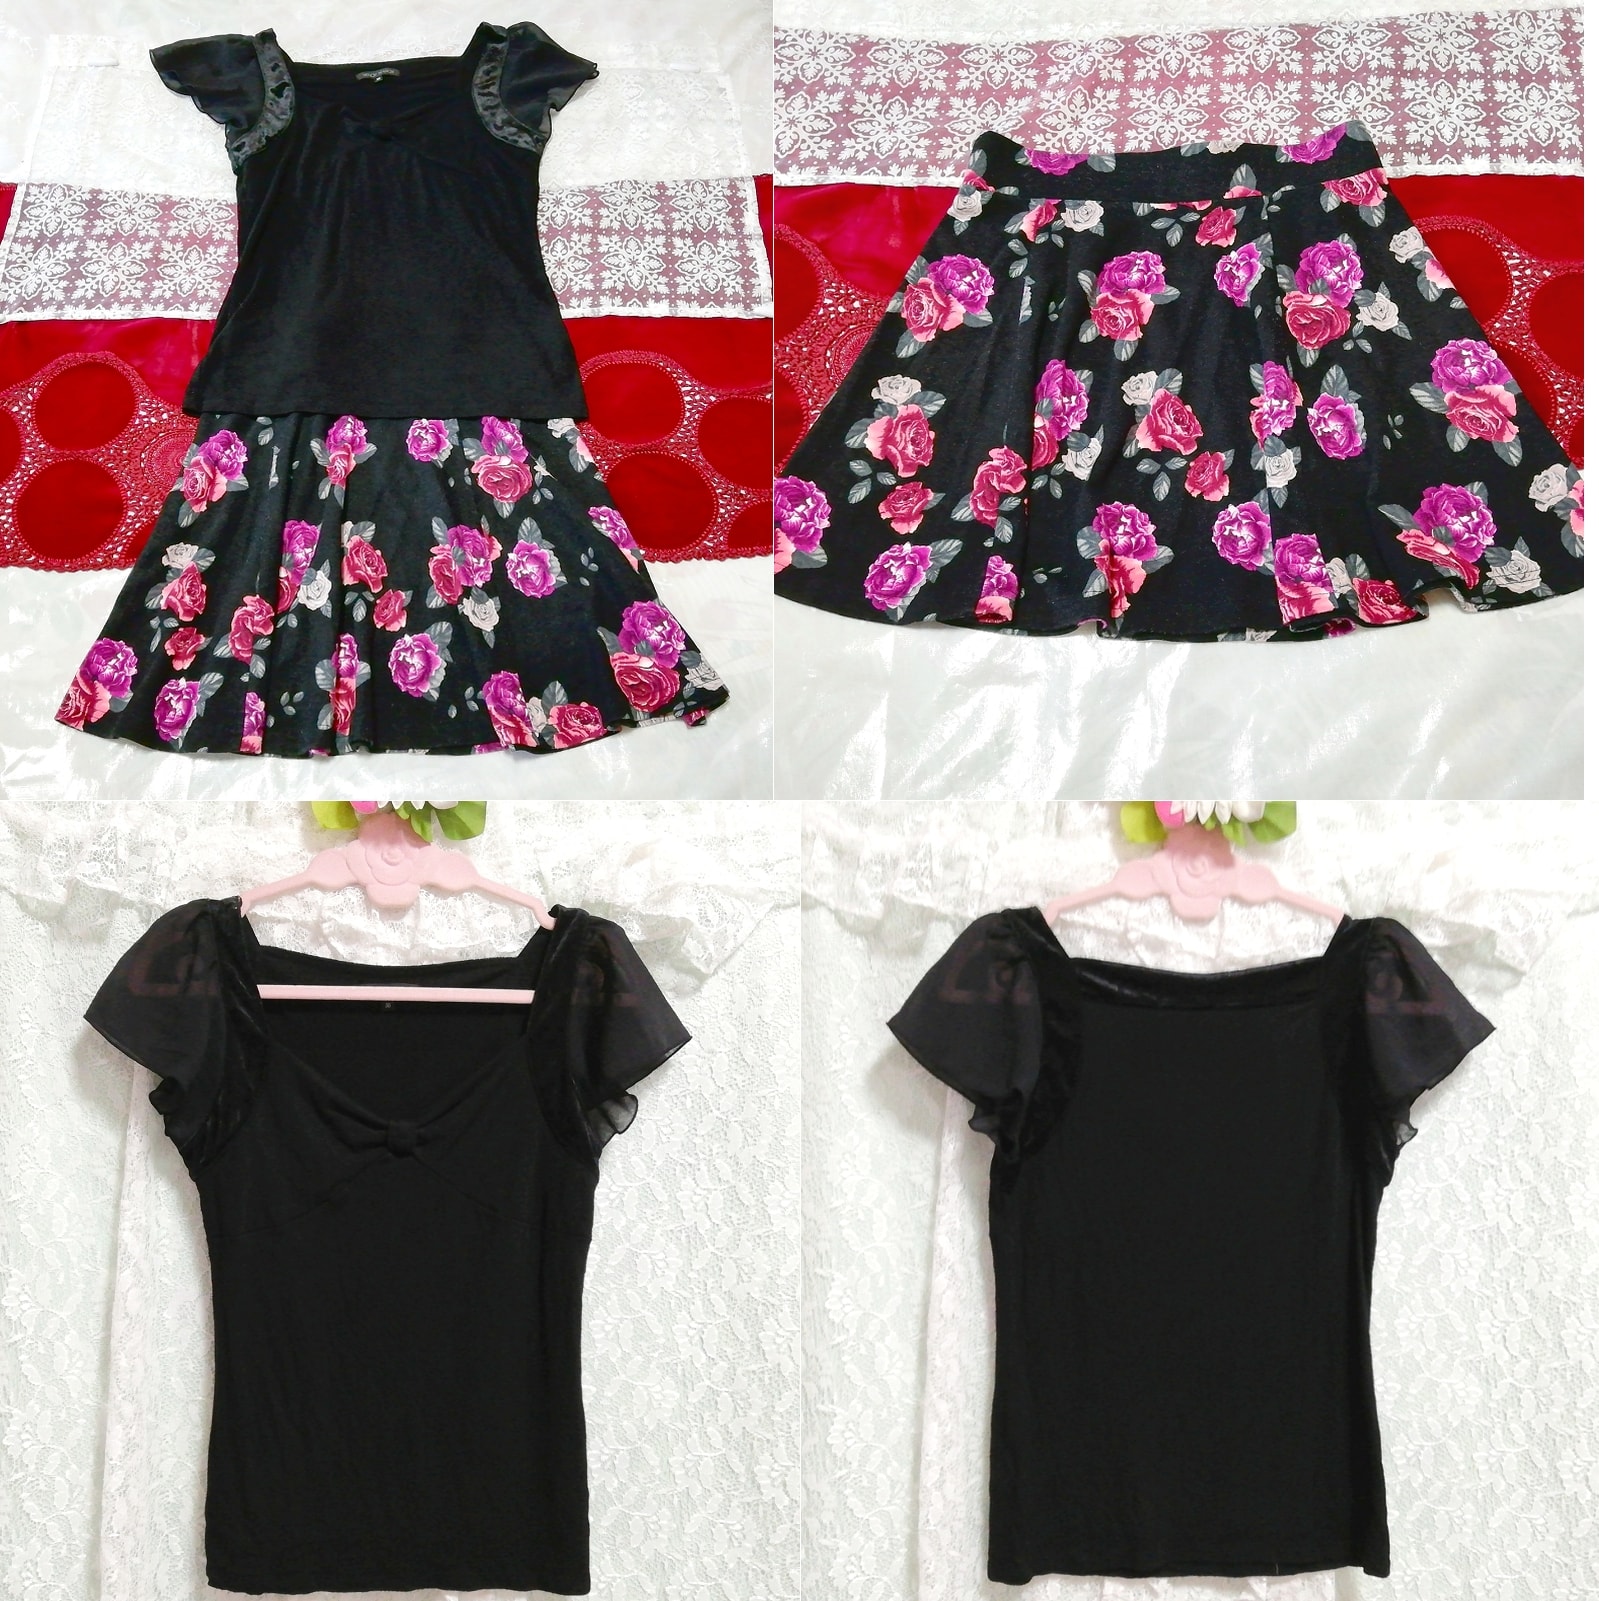 블랙 컷소우 튜닉 네글리제 나이트가운 흑장미 꽃무늬 미니스커트 2P, 패션, 숙녀 패션, 잠옷, 잠옷